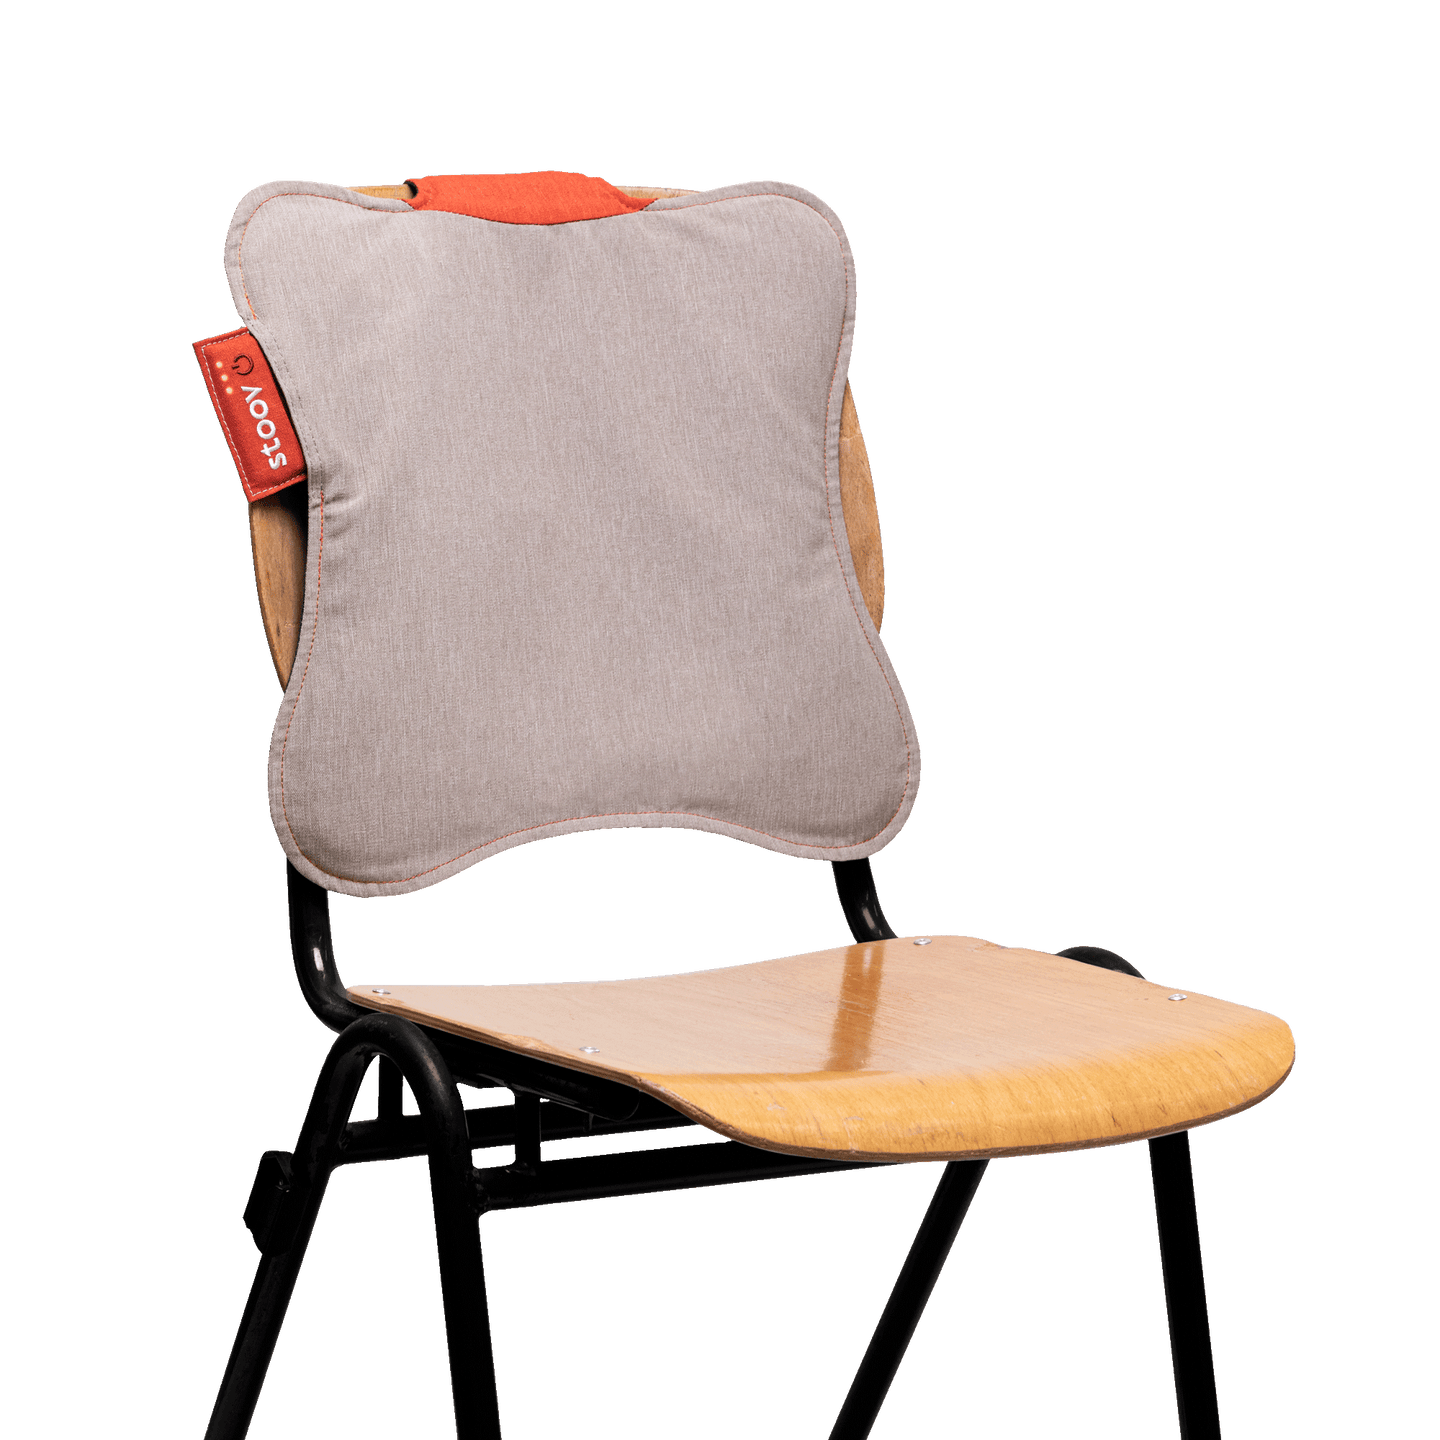 Warmtepad Pro 42x42 Outdoor Taupe stoel rugvlak